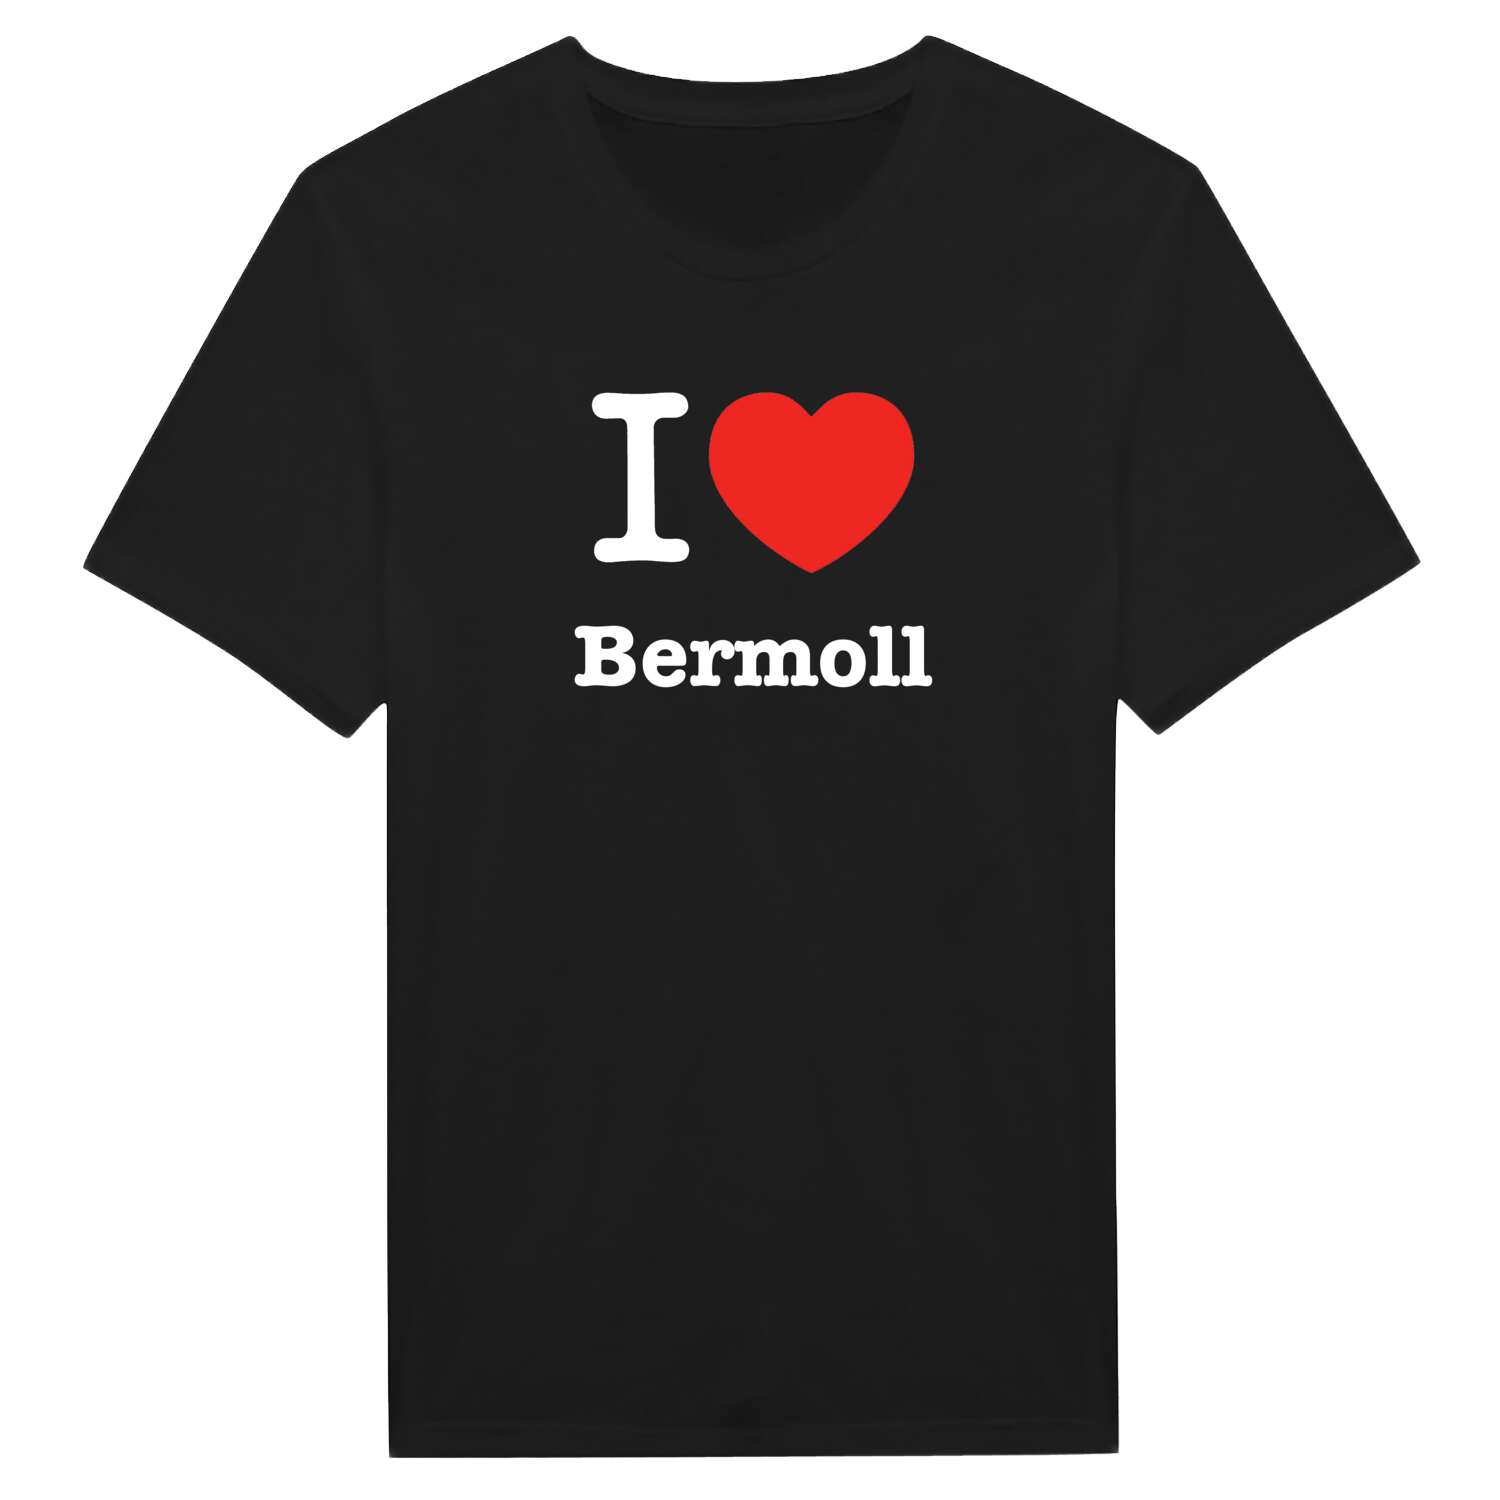 Bermoll T-Shirt »I love«